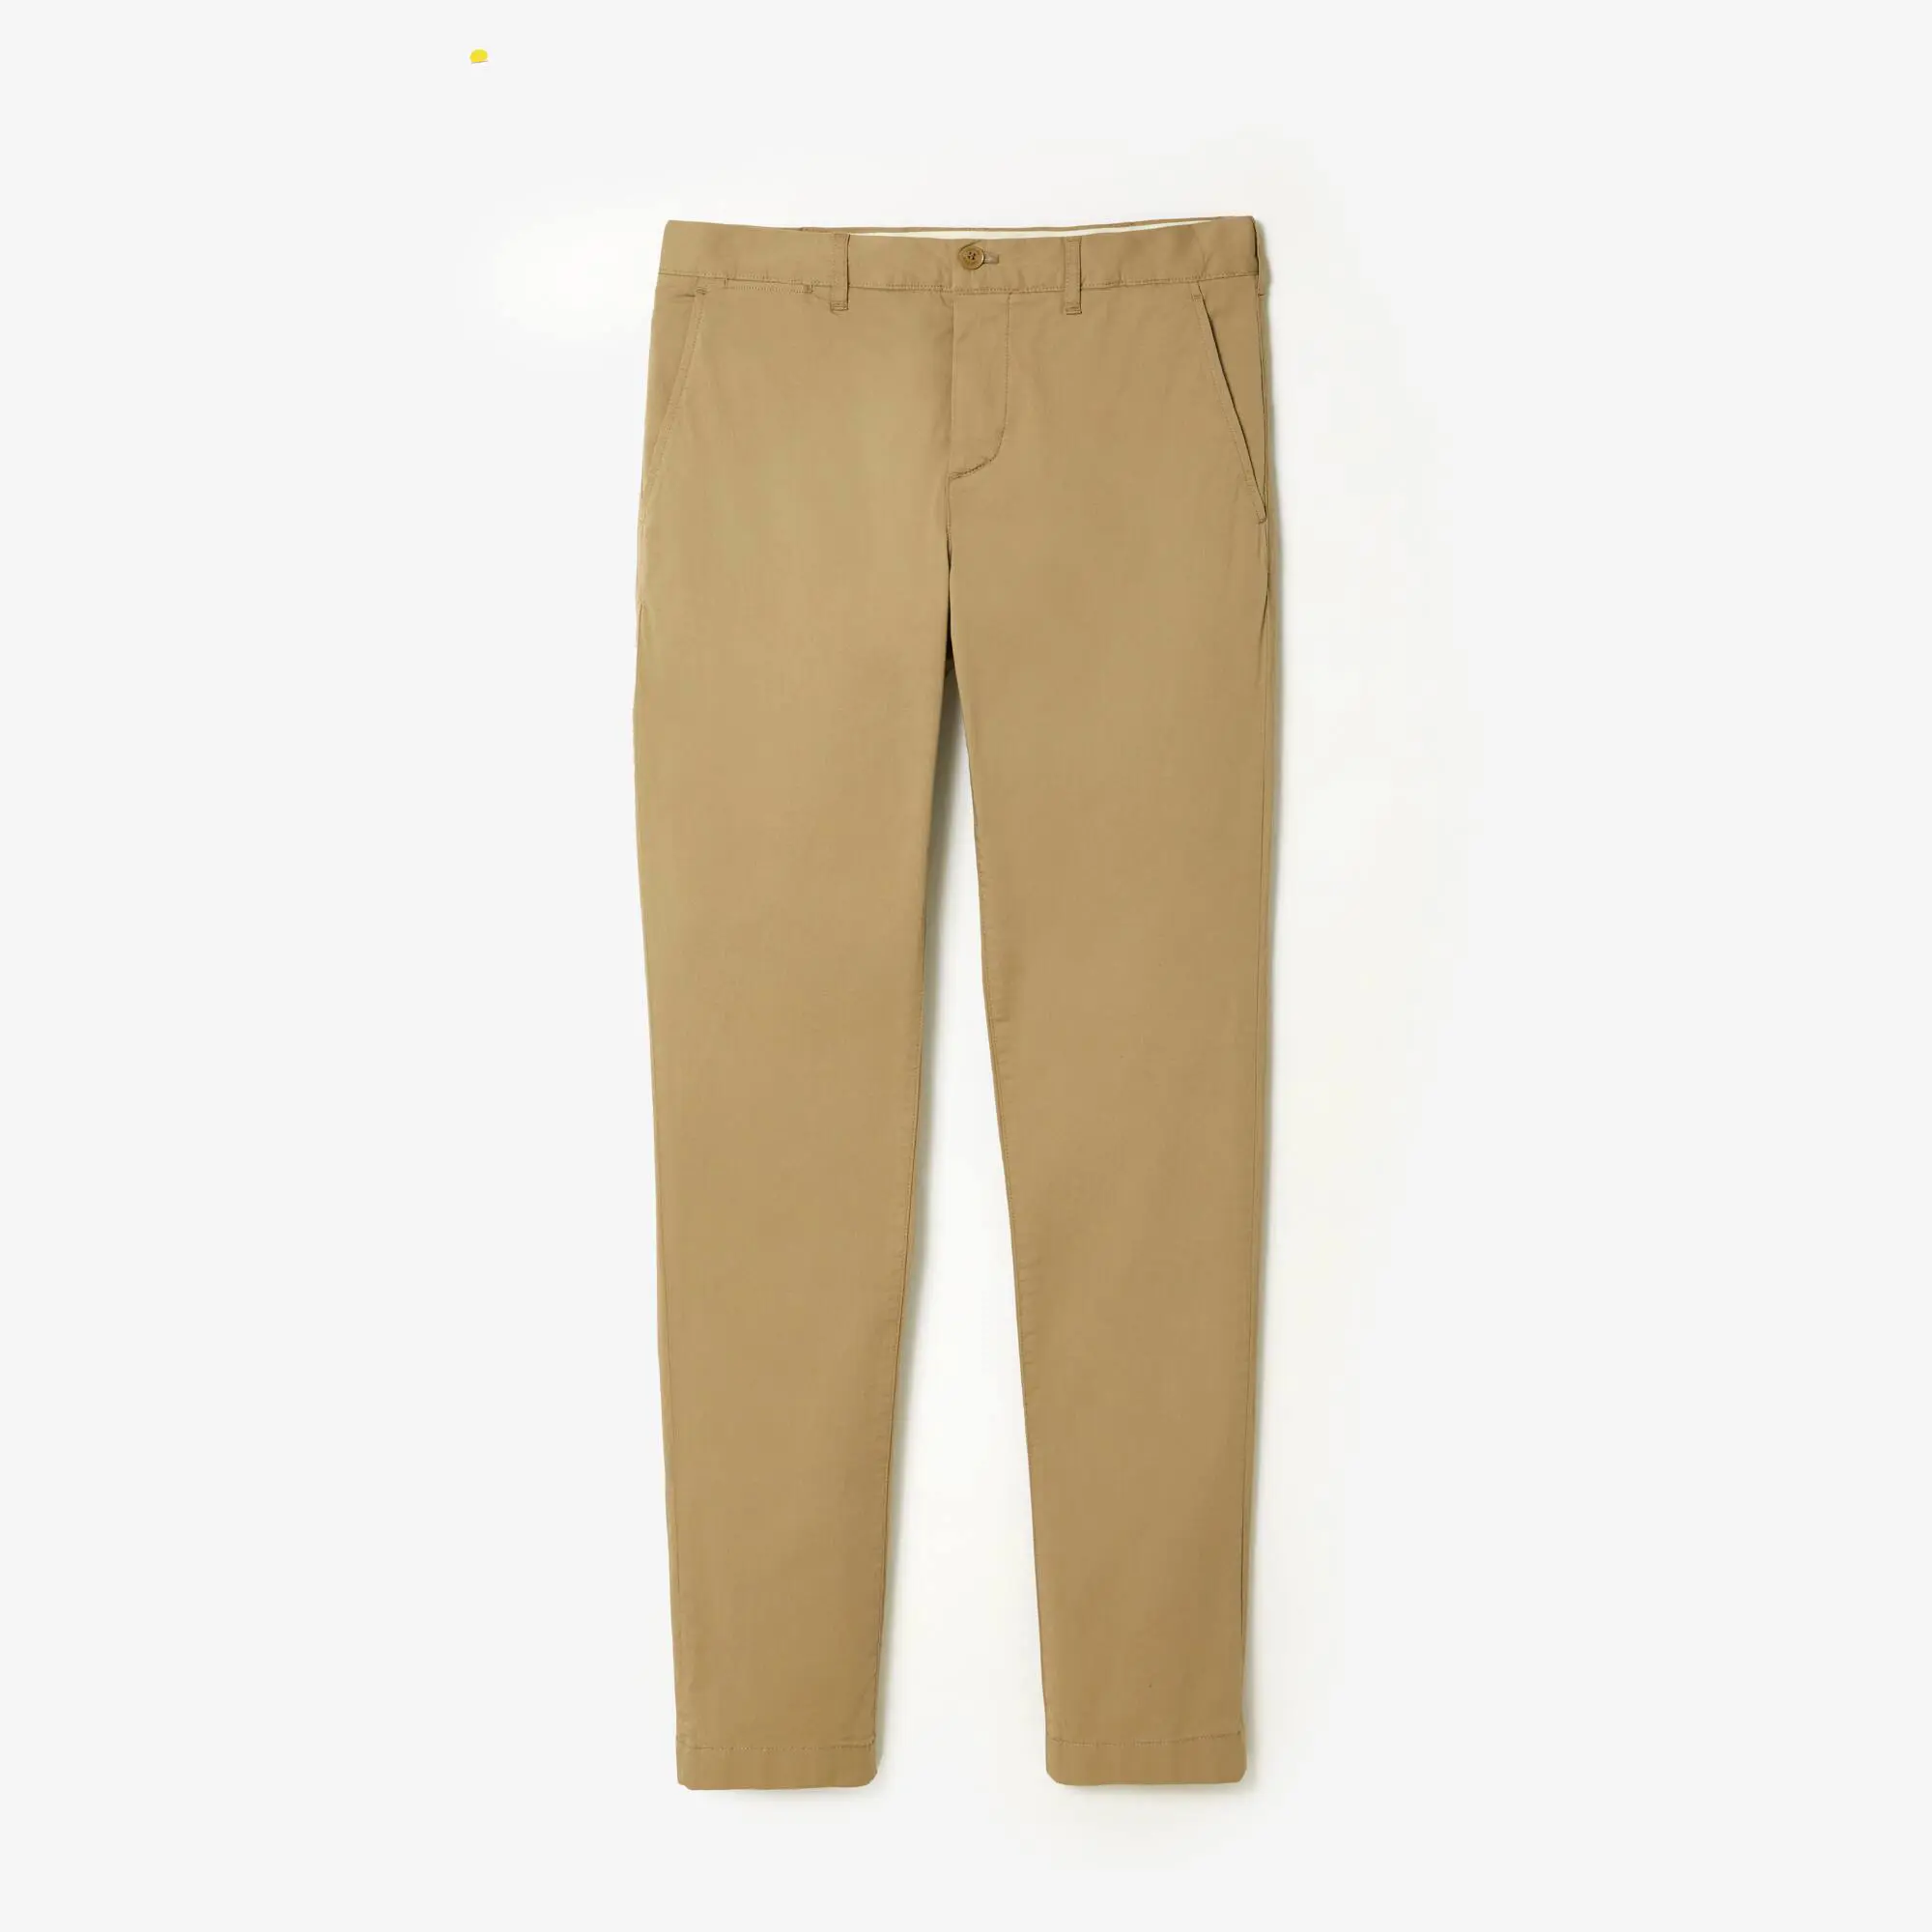 Lacoste Pantalon chino slim fit en coton stretch uni. 2